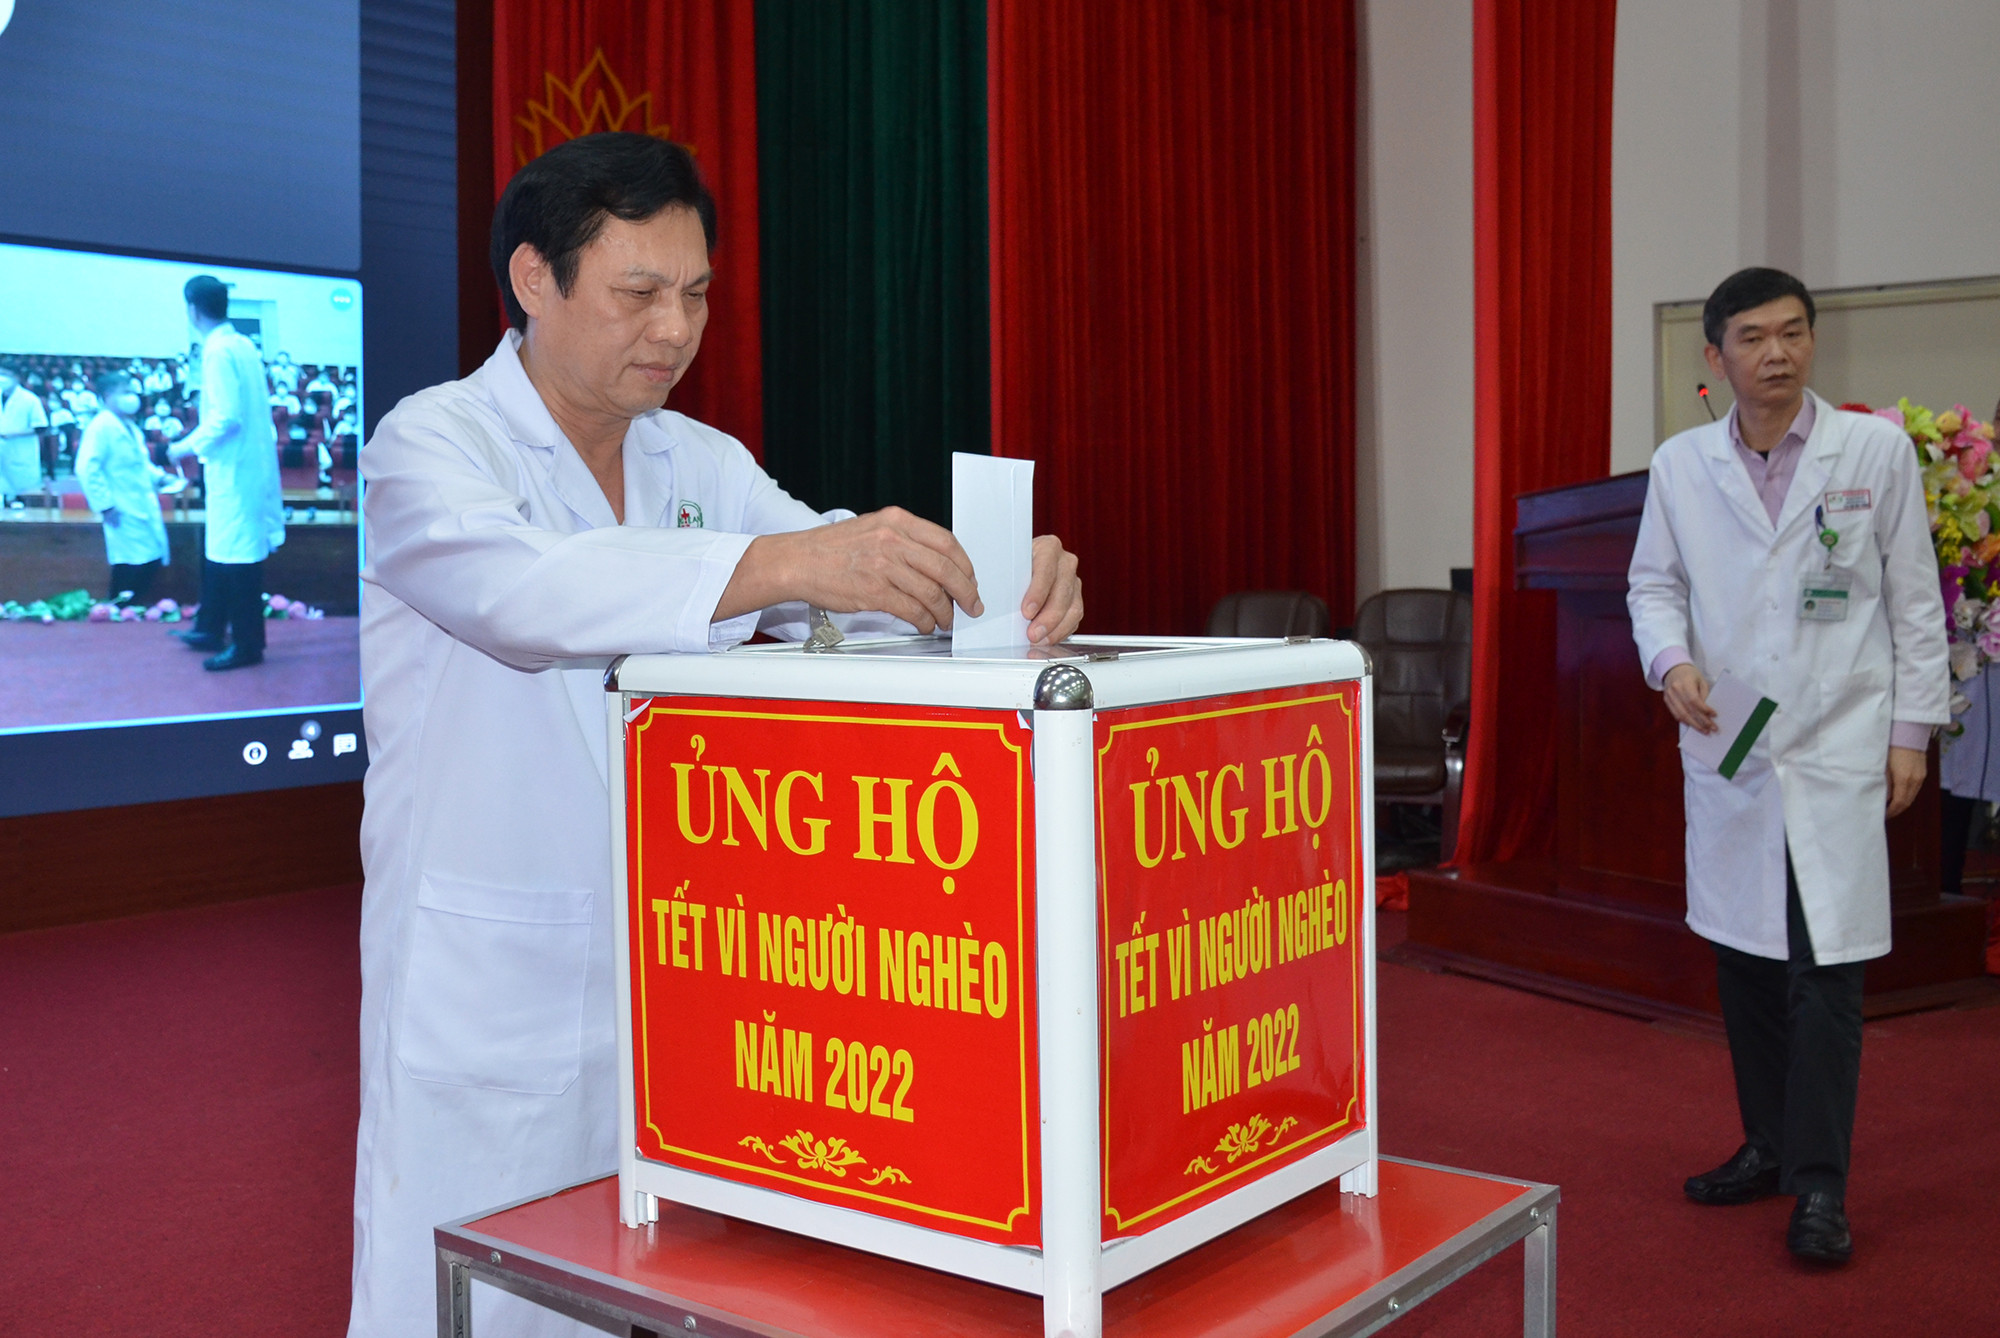 Ban Giám đốc Bệnh viện HNĐK Nghệ An thực hiện quyên góp ủng hộ Tết vì người nghèo. Ảnh: Thành Chung